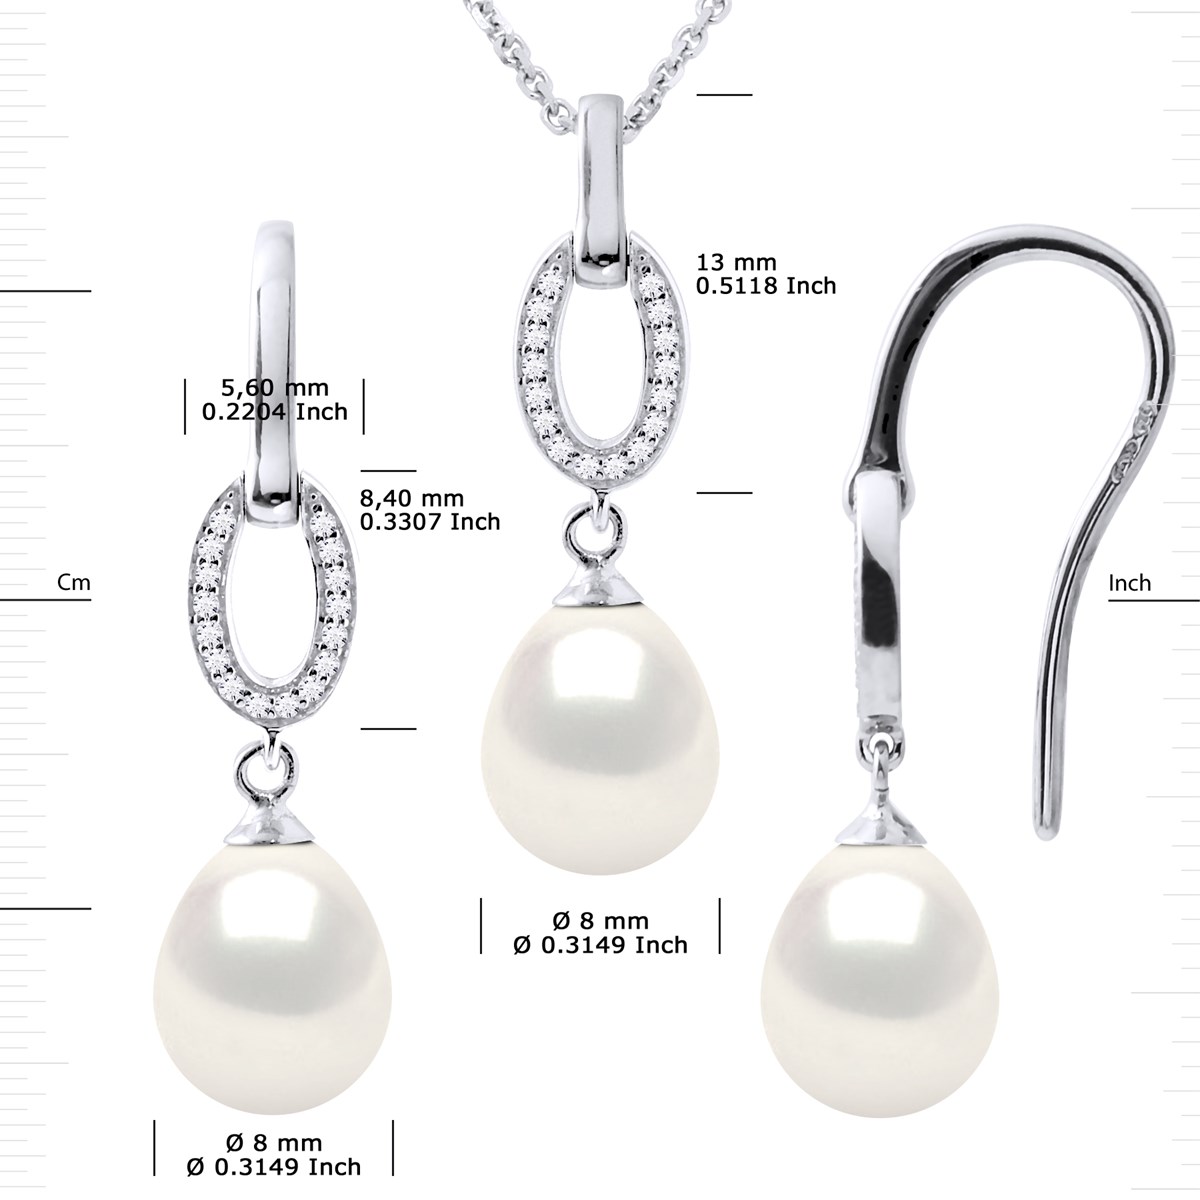 Parure NORMANDY Collier & Boucles d'Oreilles Pendantes Perles d'Eau Douce Blanches Argent 925 - vue 3